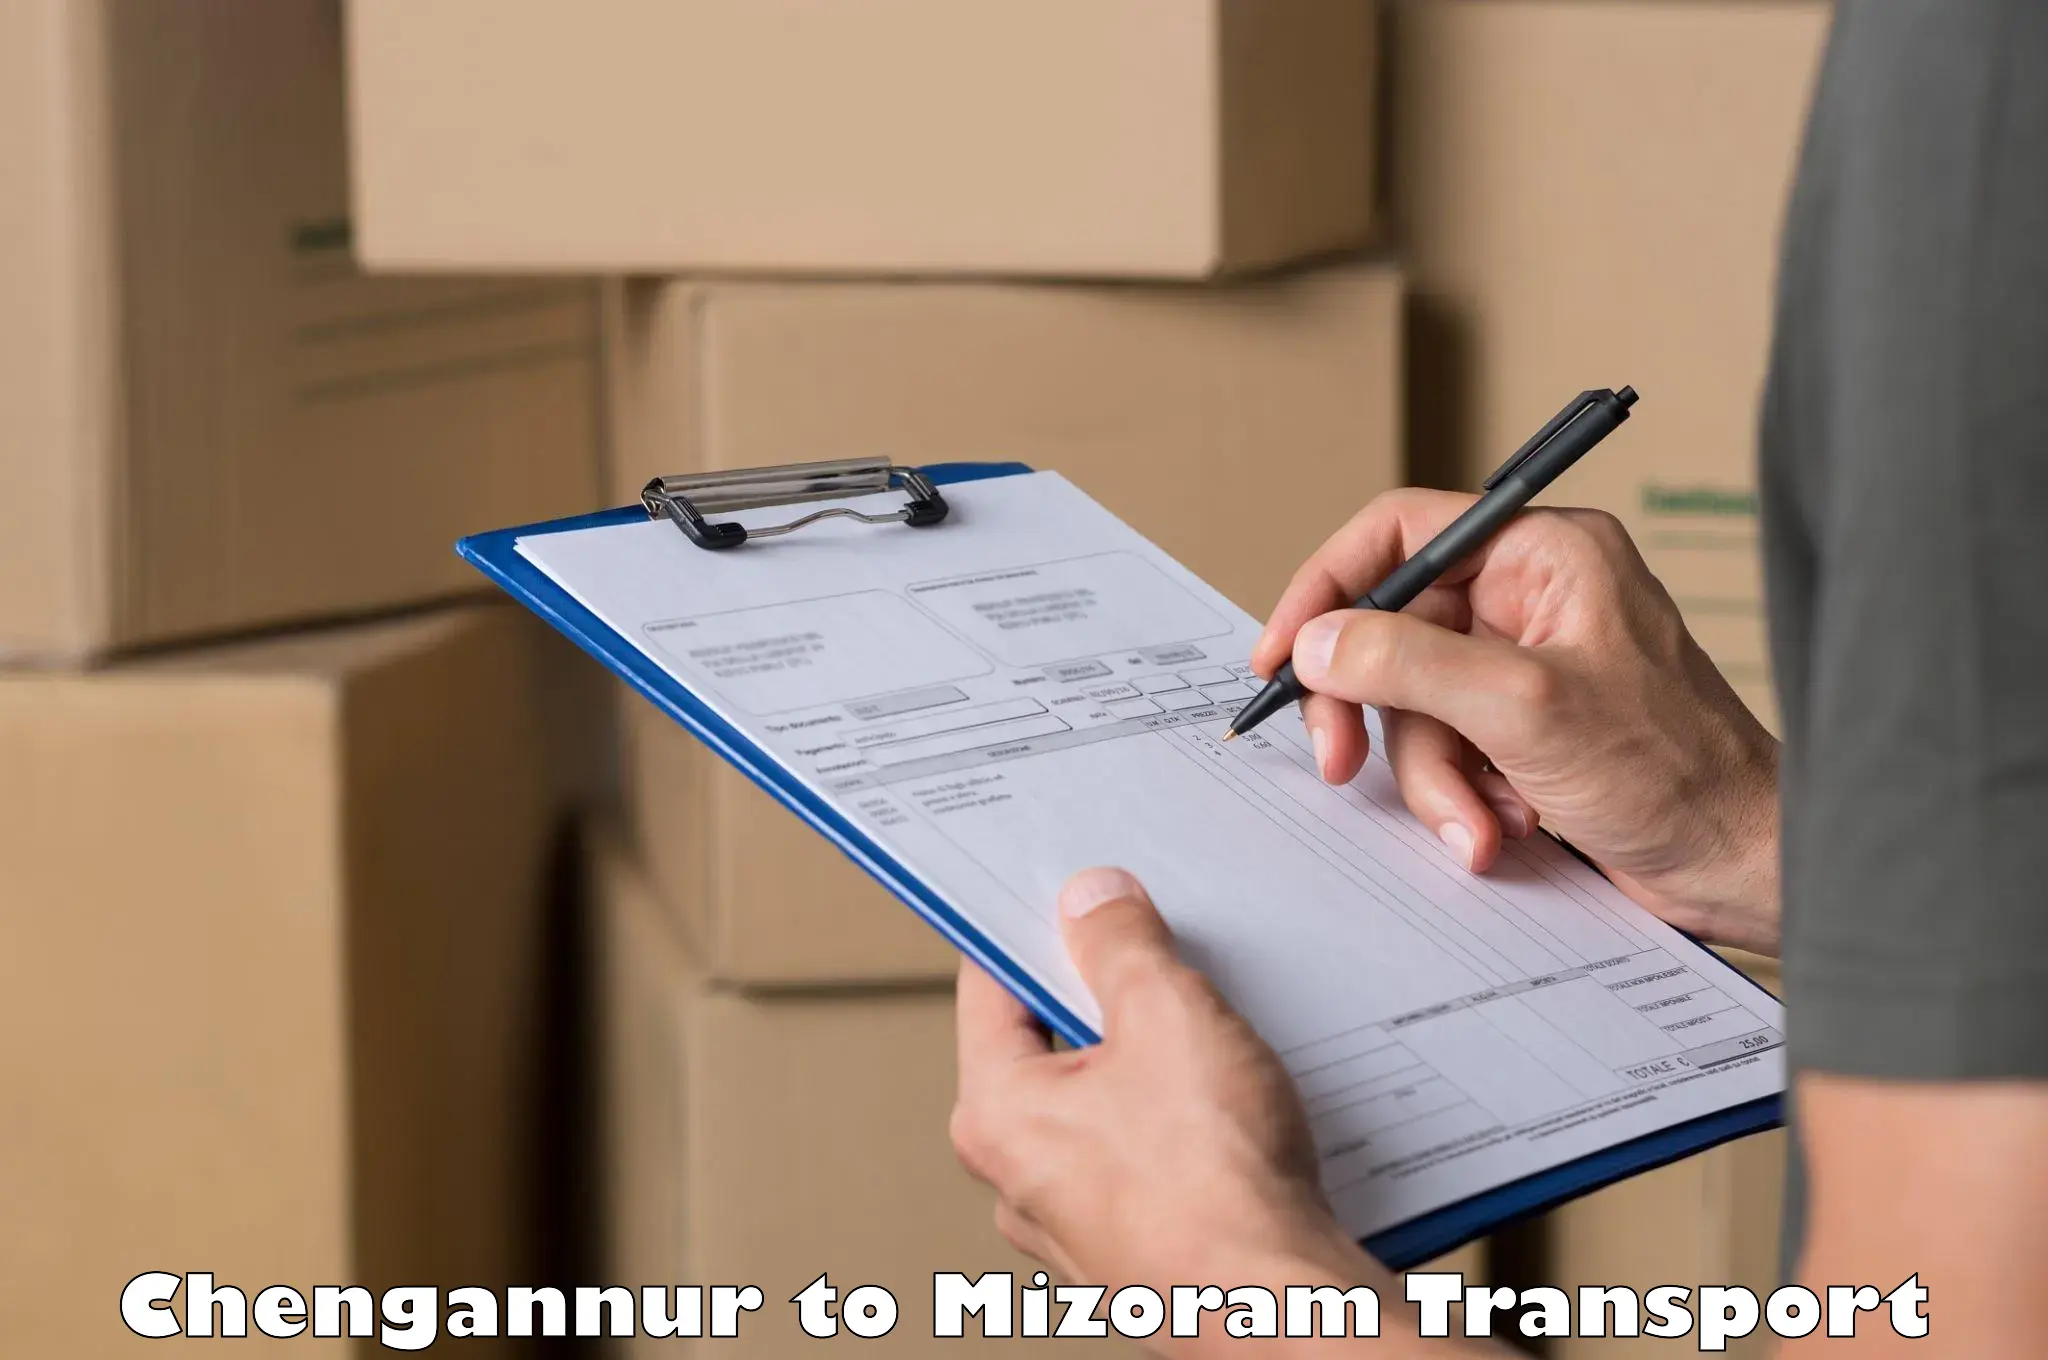 Cargo transport services Chengannur to Mizoram